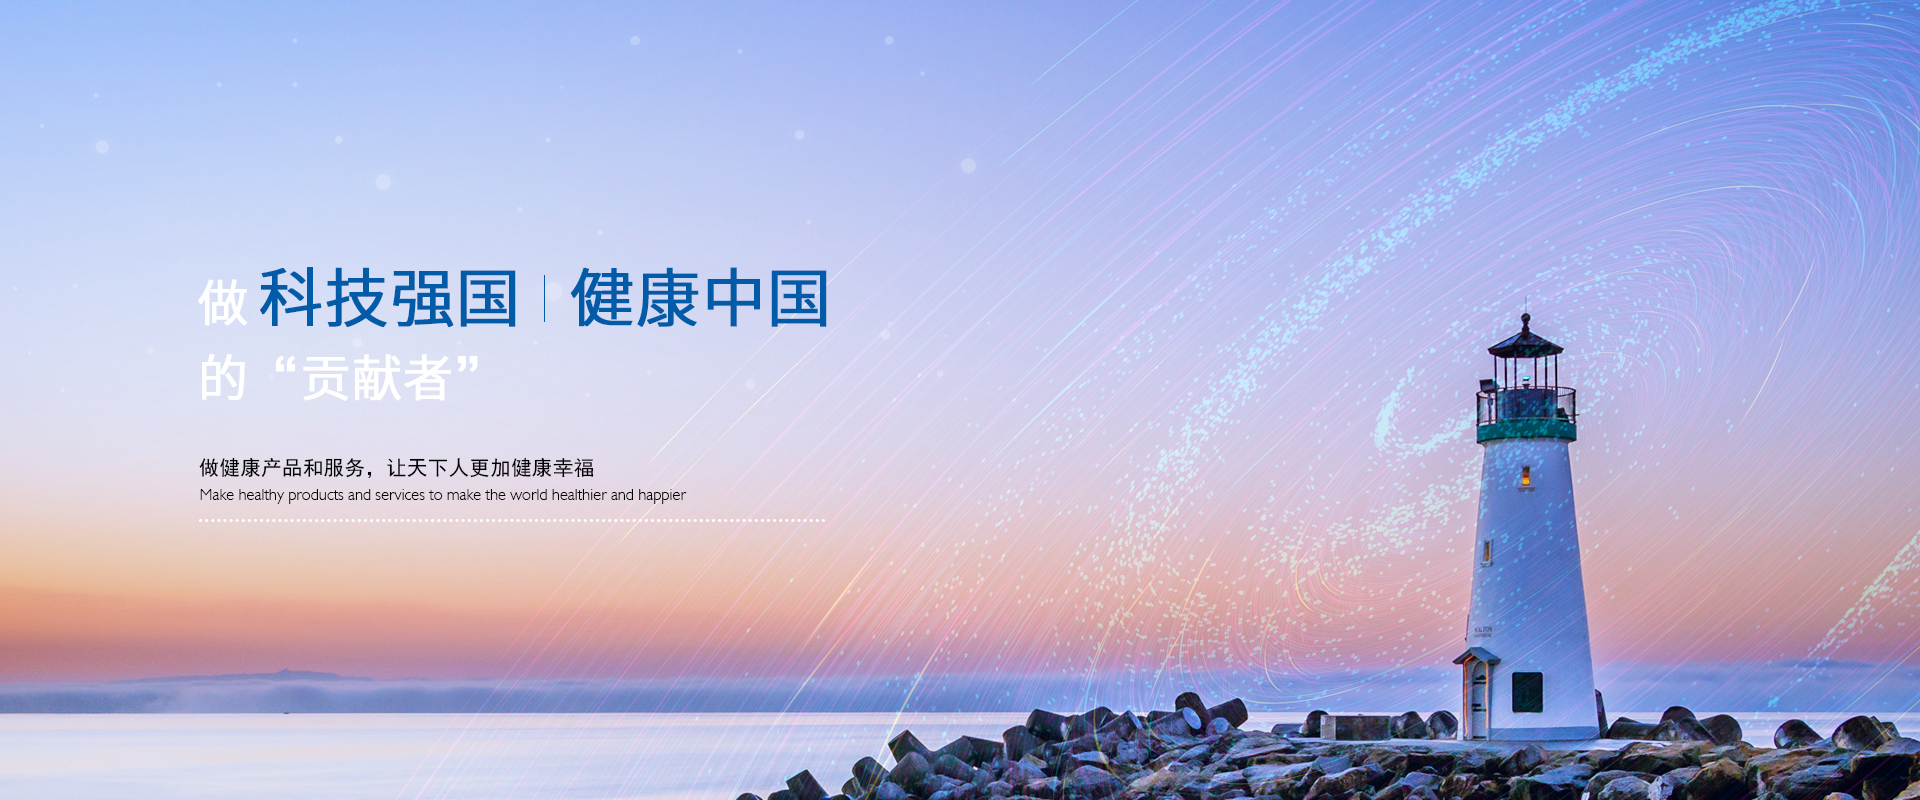 关于当前产品bet9登陆·(中国)官方网站的成功案例等相关图片